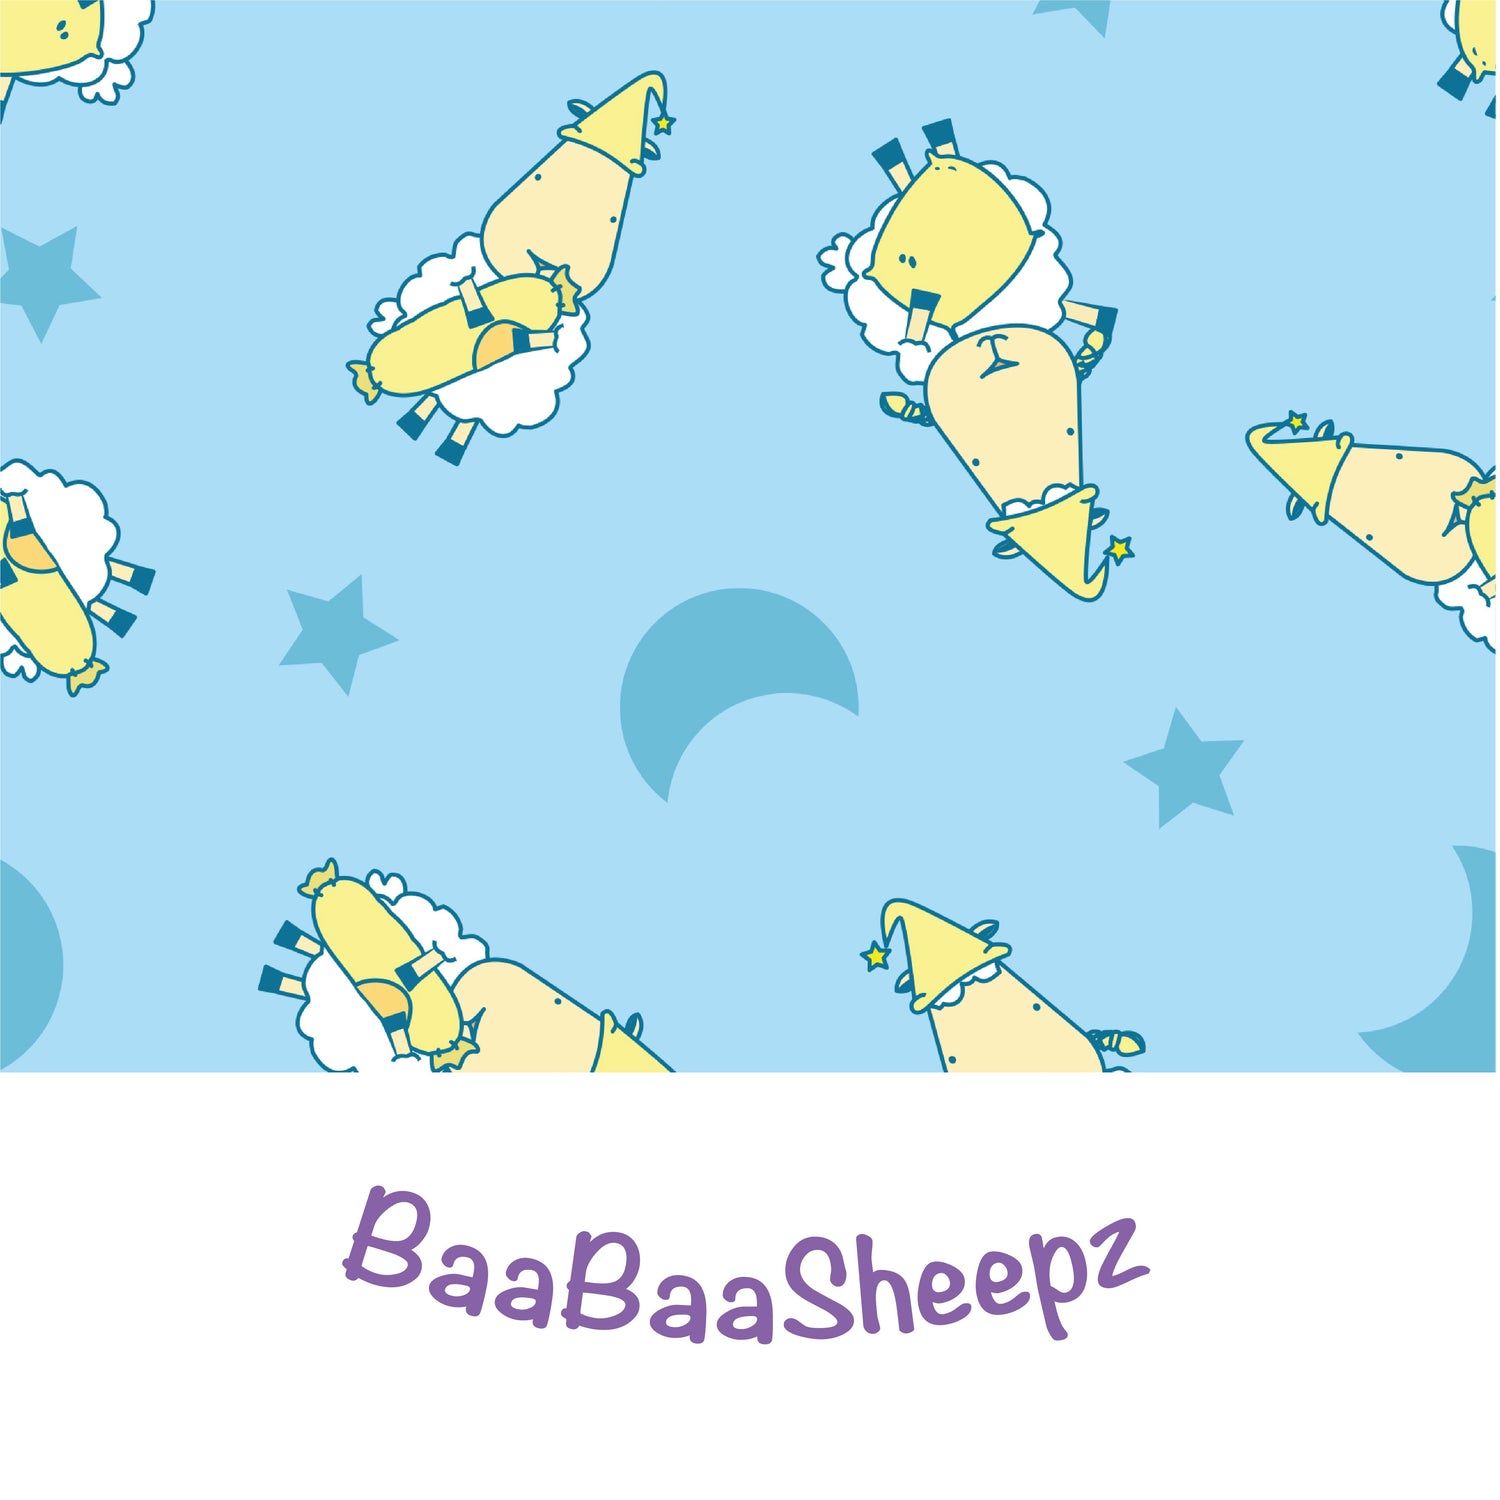 BaaBaaSheepz